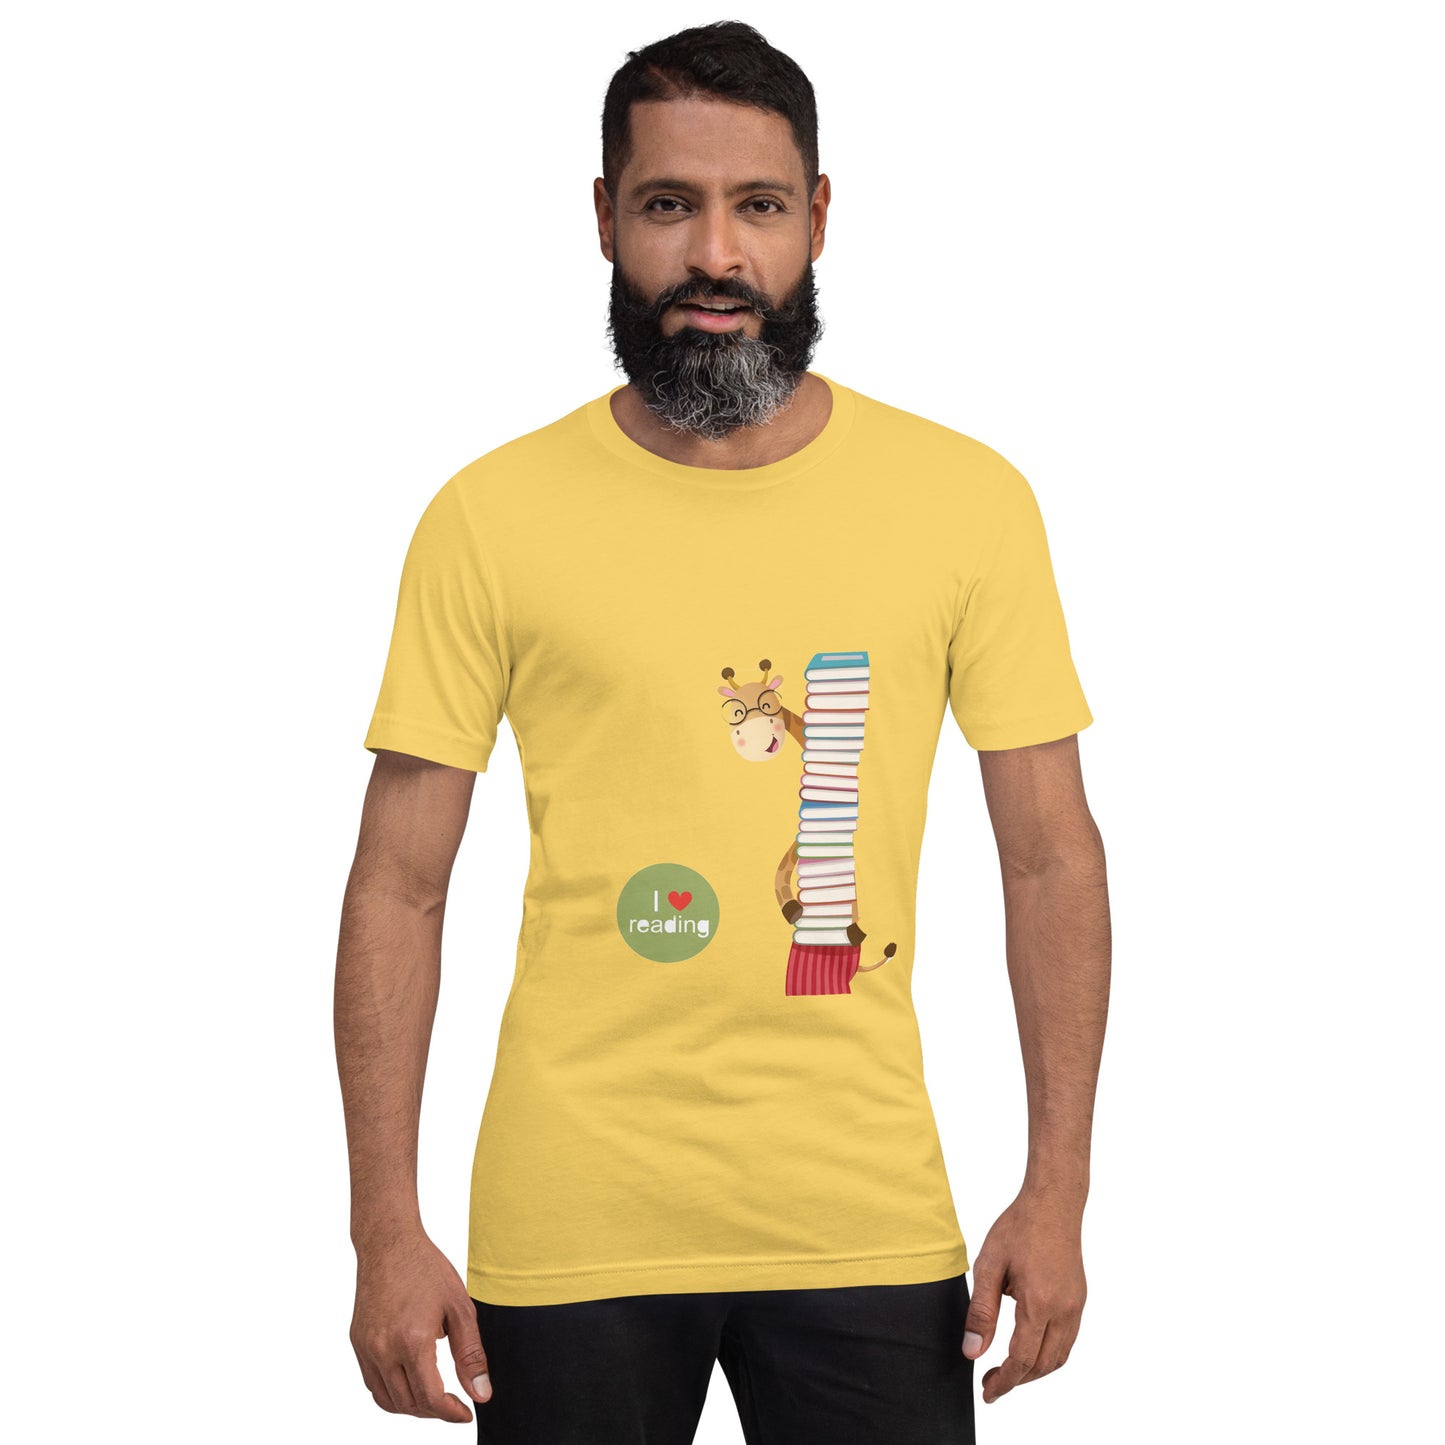 " I love reading. " - Giraffe Unisex t-shirt